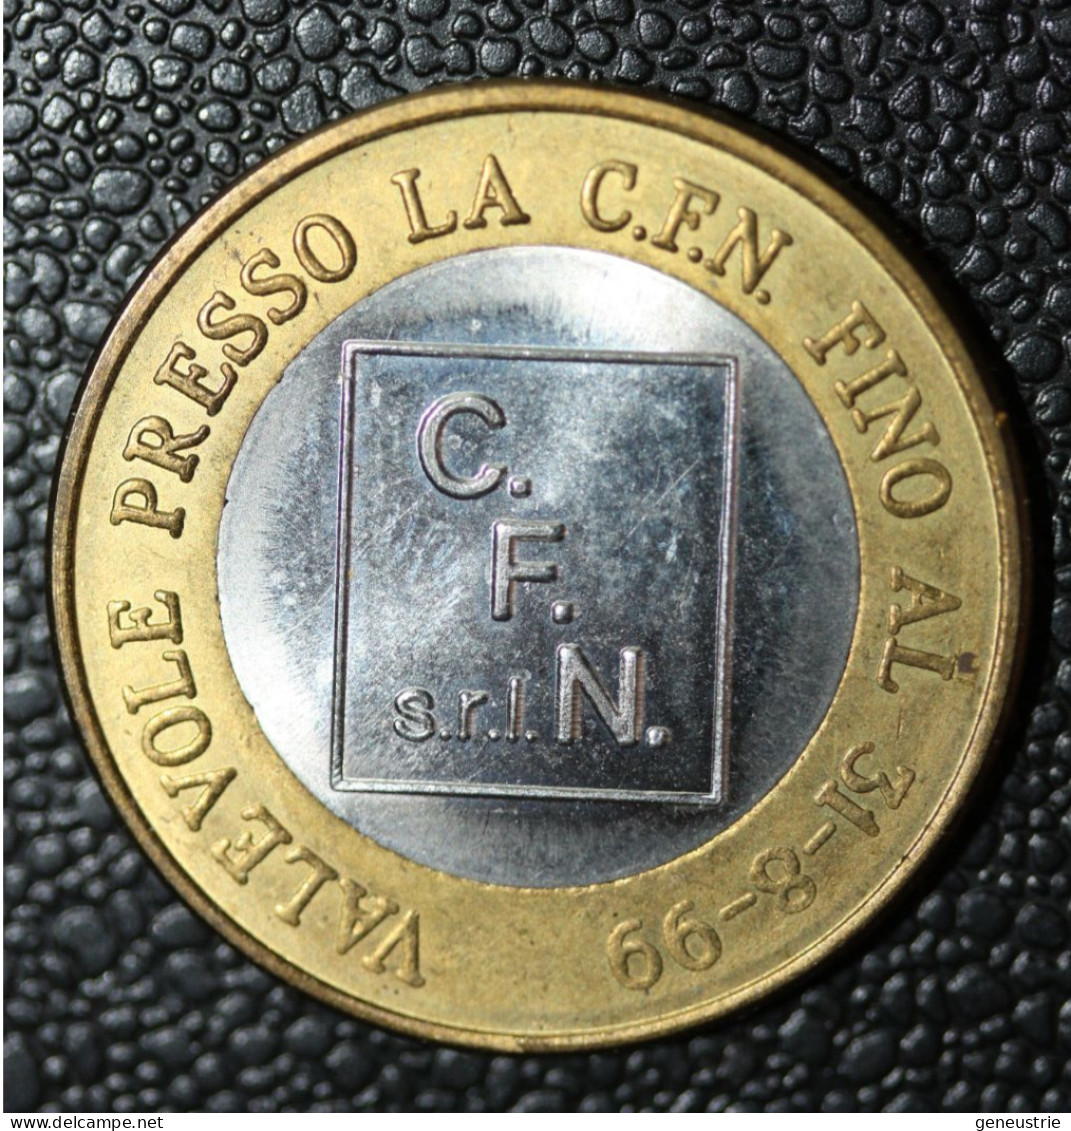 Pièce De 1 Euro Provisoire De La Société Italienne C.F.N. S.r.l. Valable Jusqu'au 31-08-1999" - Italia